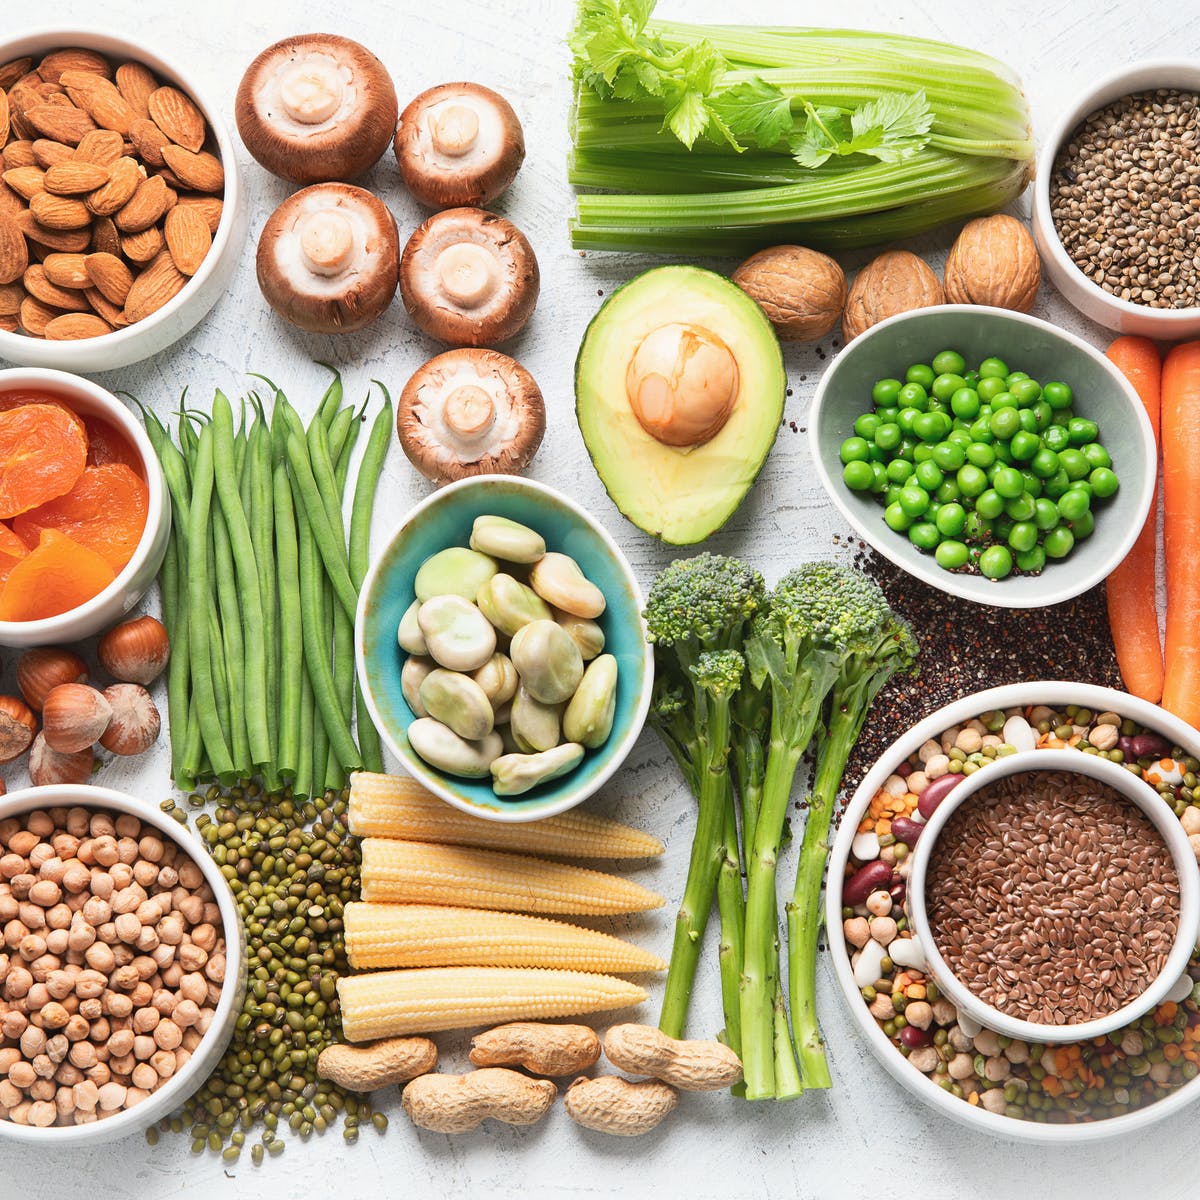 शाकाहारी लोगों के लिए ये हैं प्रोटीन का अच्छा सोर्स, खनिजों और विटामिन्स से होते हैं भरपूर